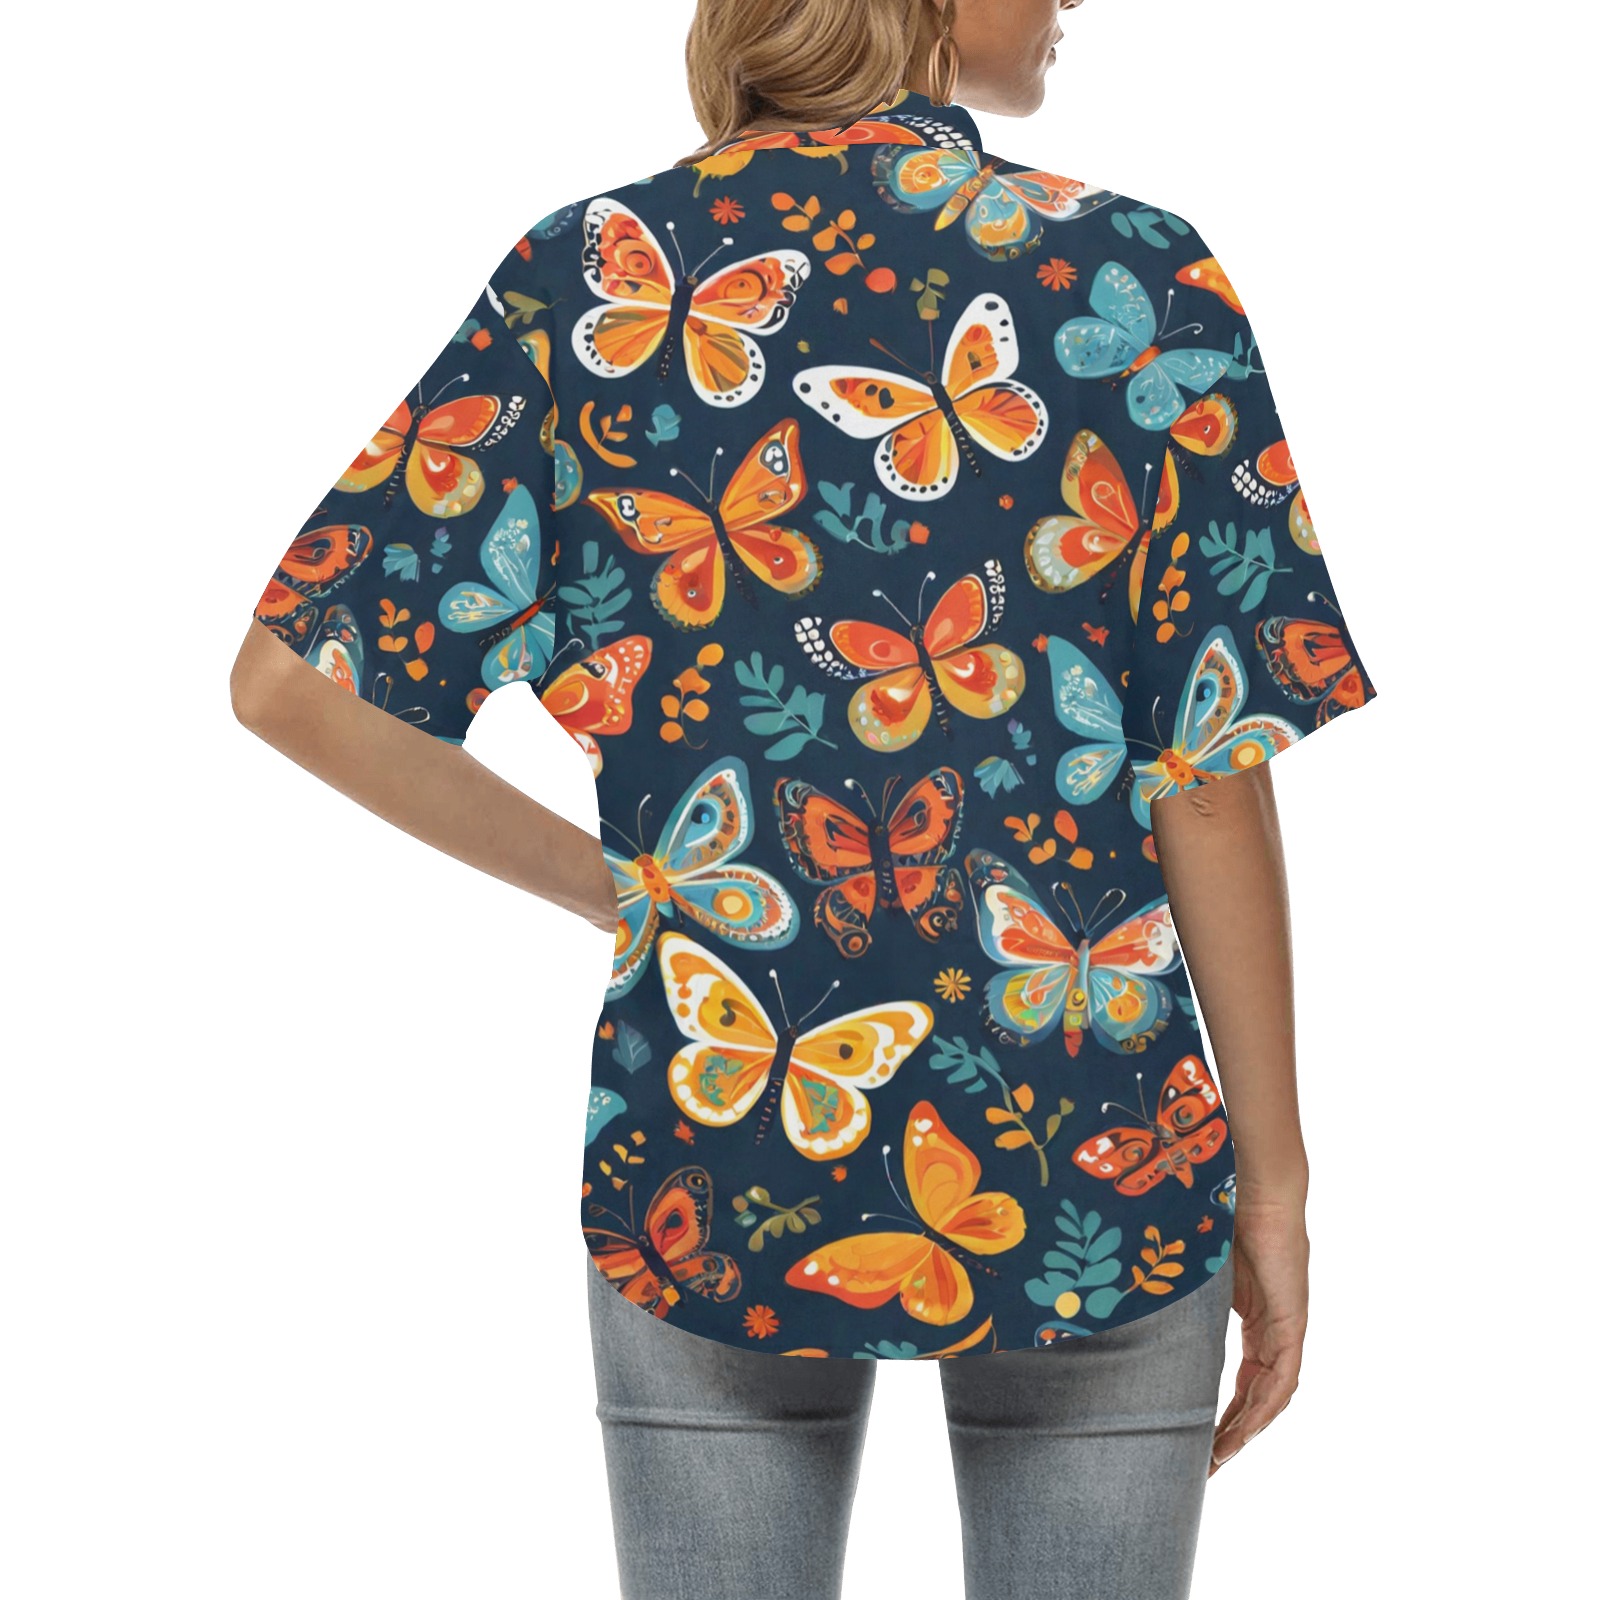 Bohemian Butterflies 2 All Over Print Hawaiian Shirt for Women (Model T58)